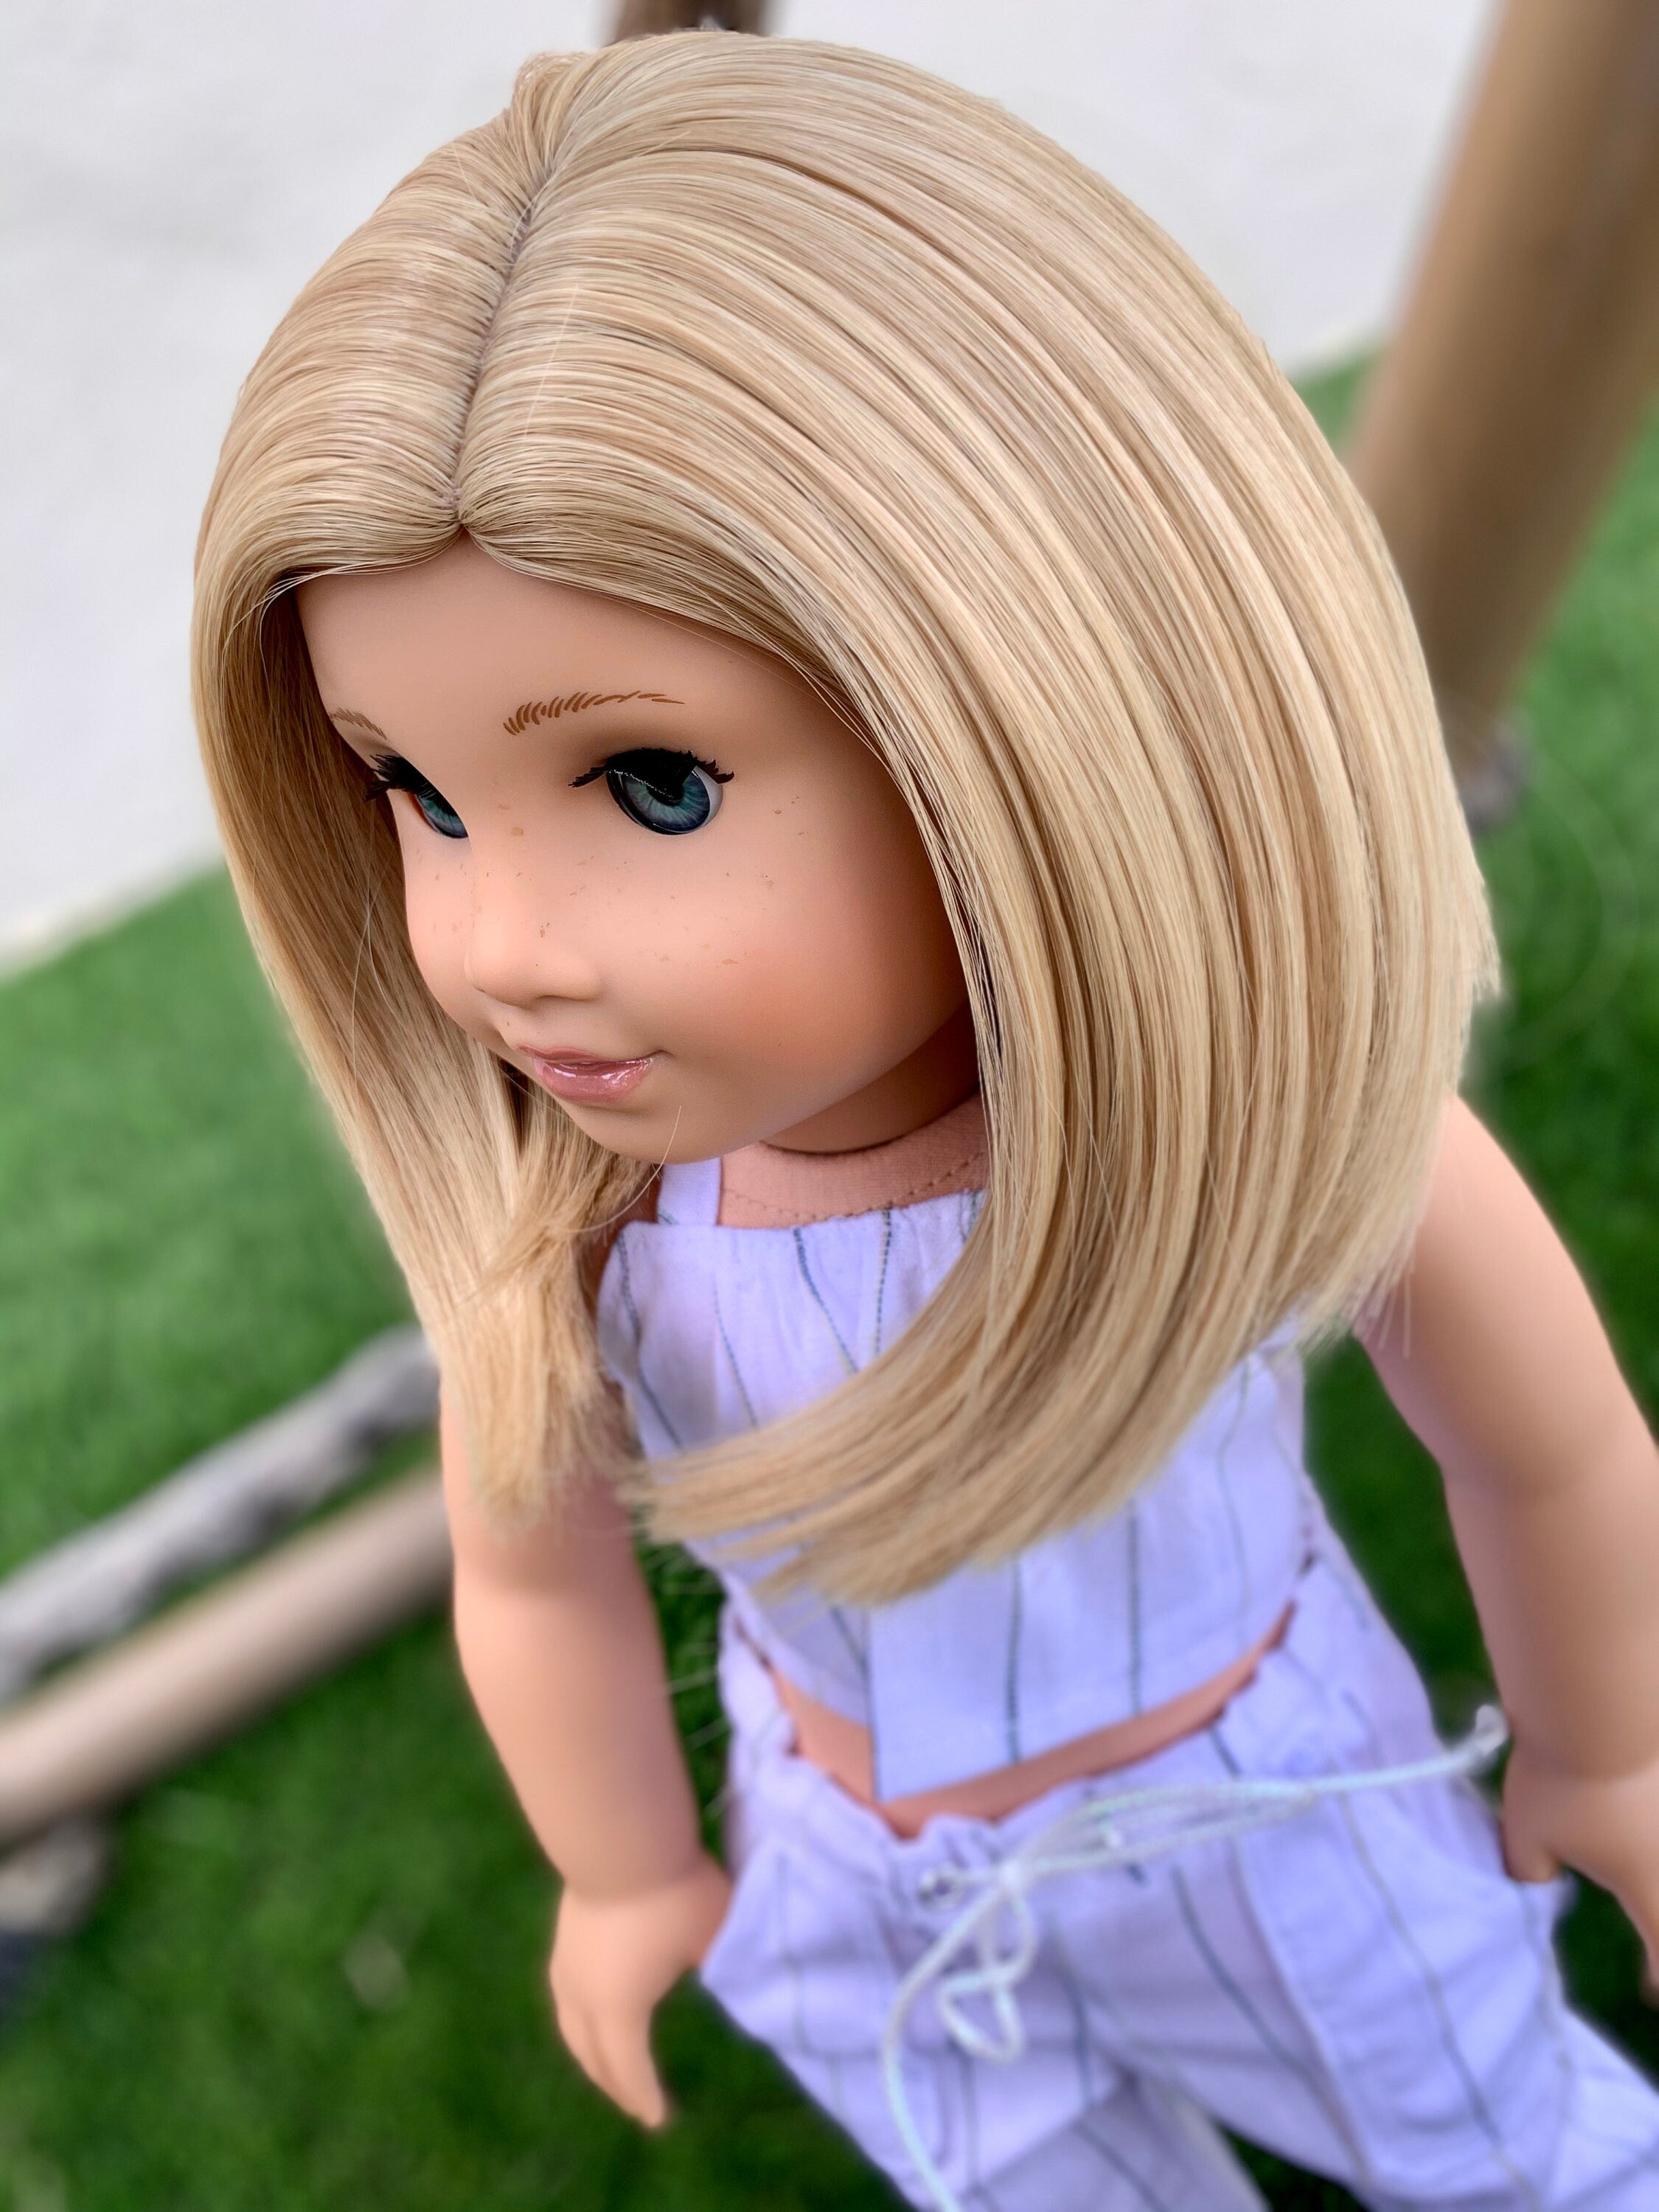 Custom doll wig for 18" American Girl Dolls - Heat Safe - Tangle Resistant - fits 10-11" head size of 18" dolls OG Blythe BJD Gotz bob